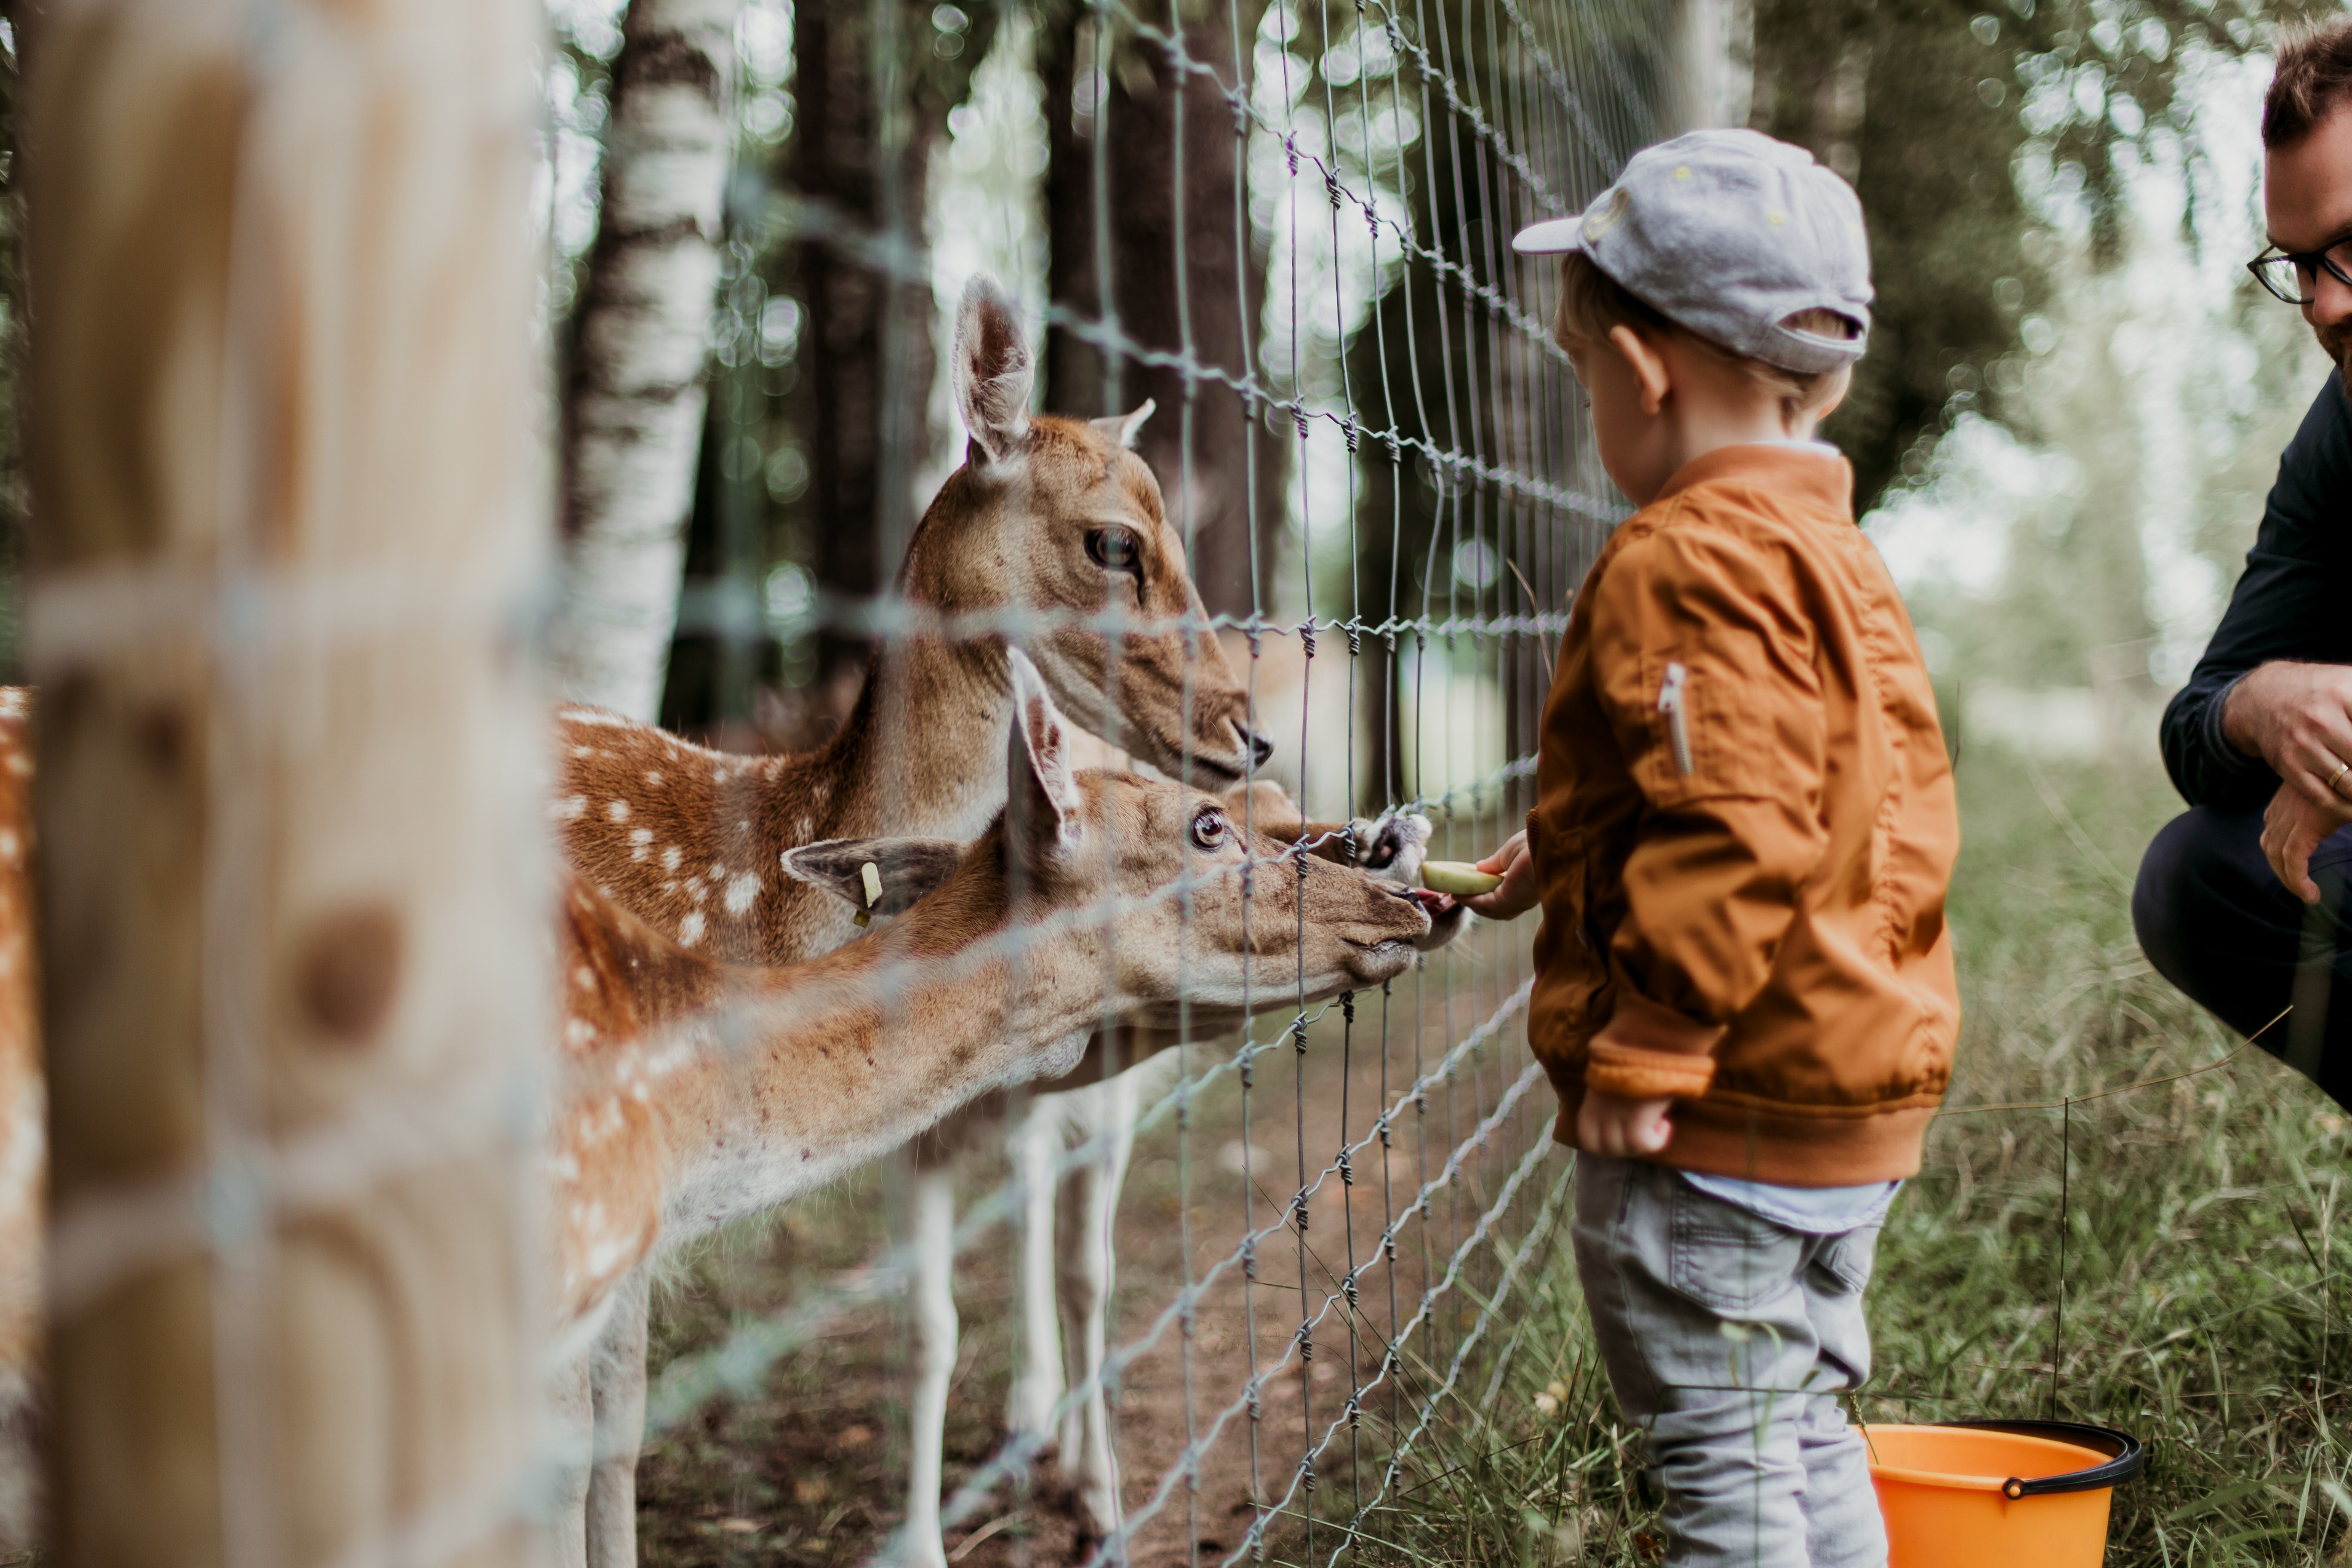 Boy feeding deer